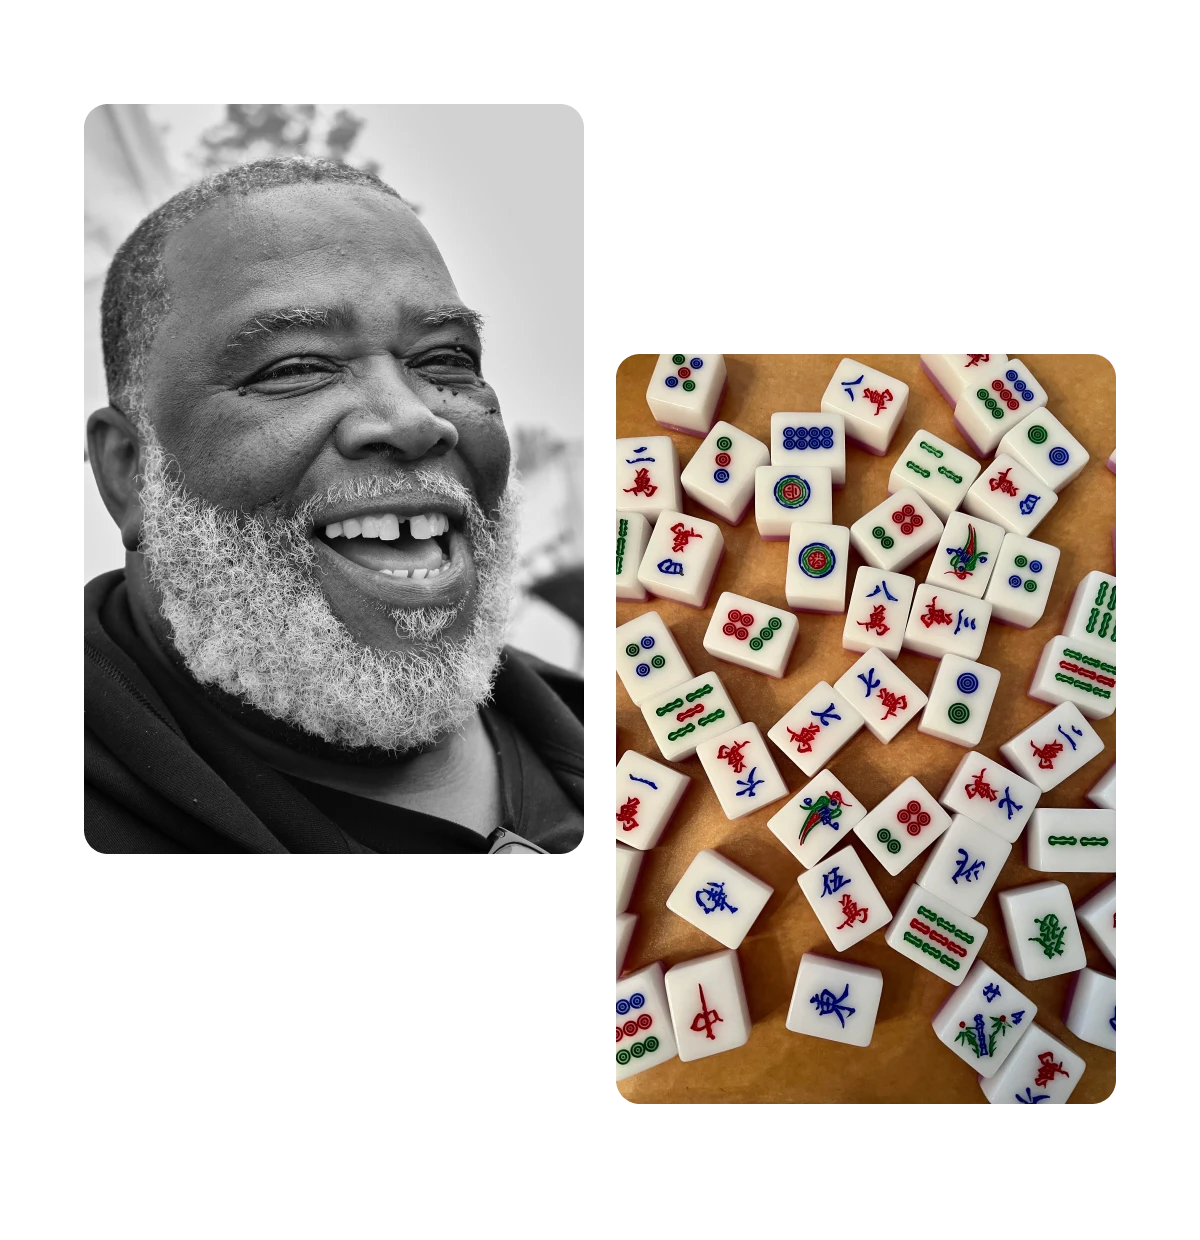 Zwei Pins, älterer Mann lächelnd, Mahjong-Spielsteine